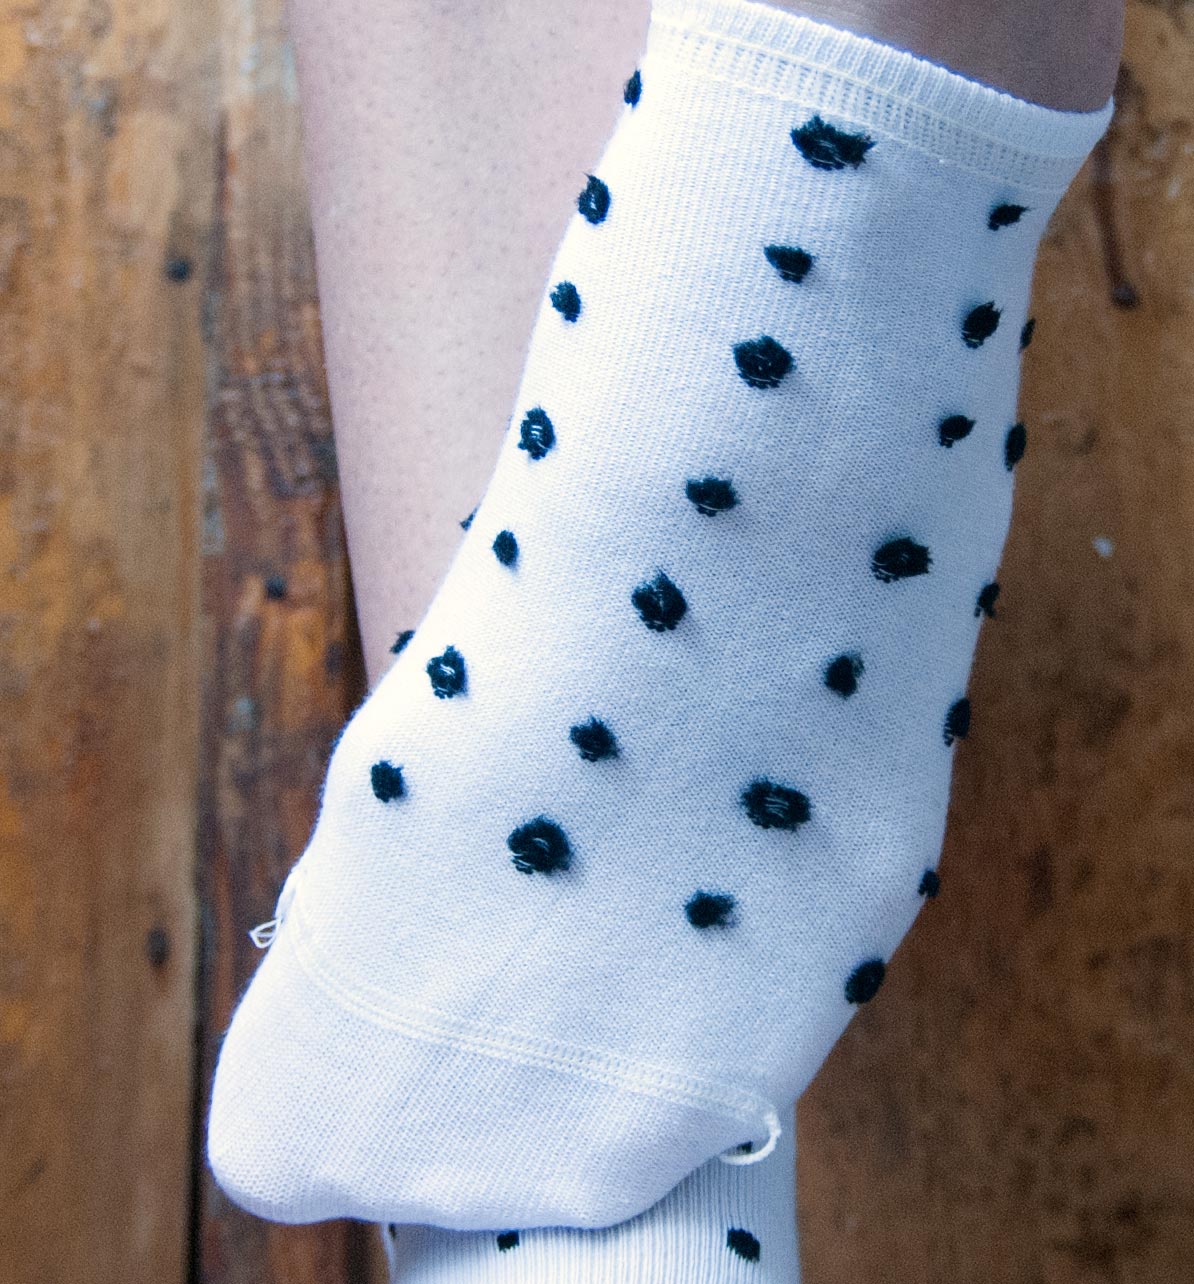 Женские носки в горошек MiNiMi Trend 4203. Изображение ©bracatus.com